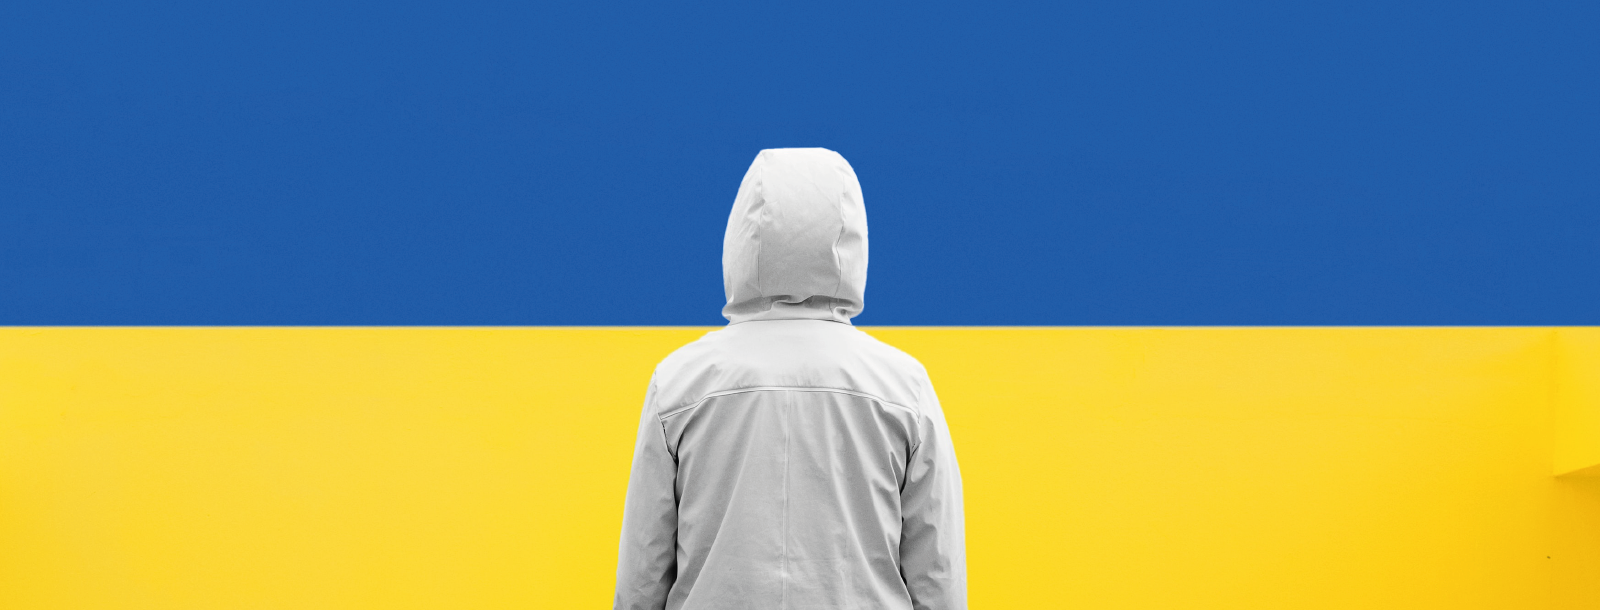 Bezpłatne zasoby Sophos dla przedsiębiorców i konsumentów z Ukrainy